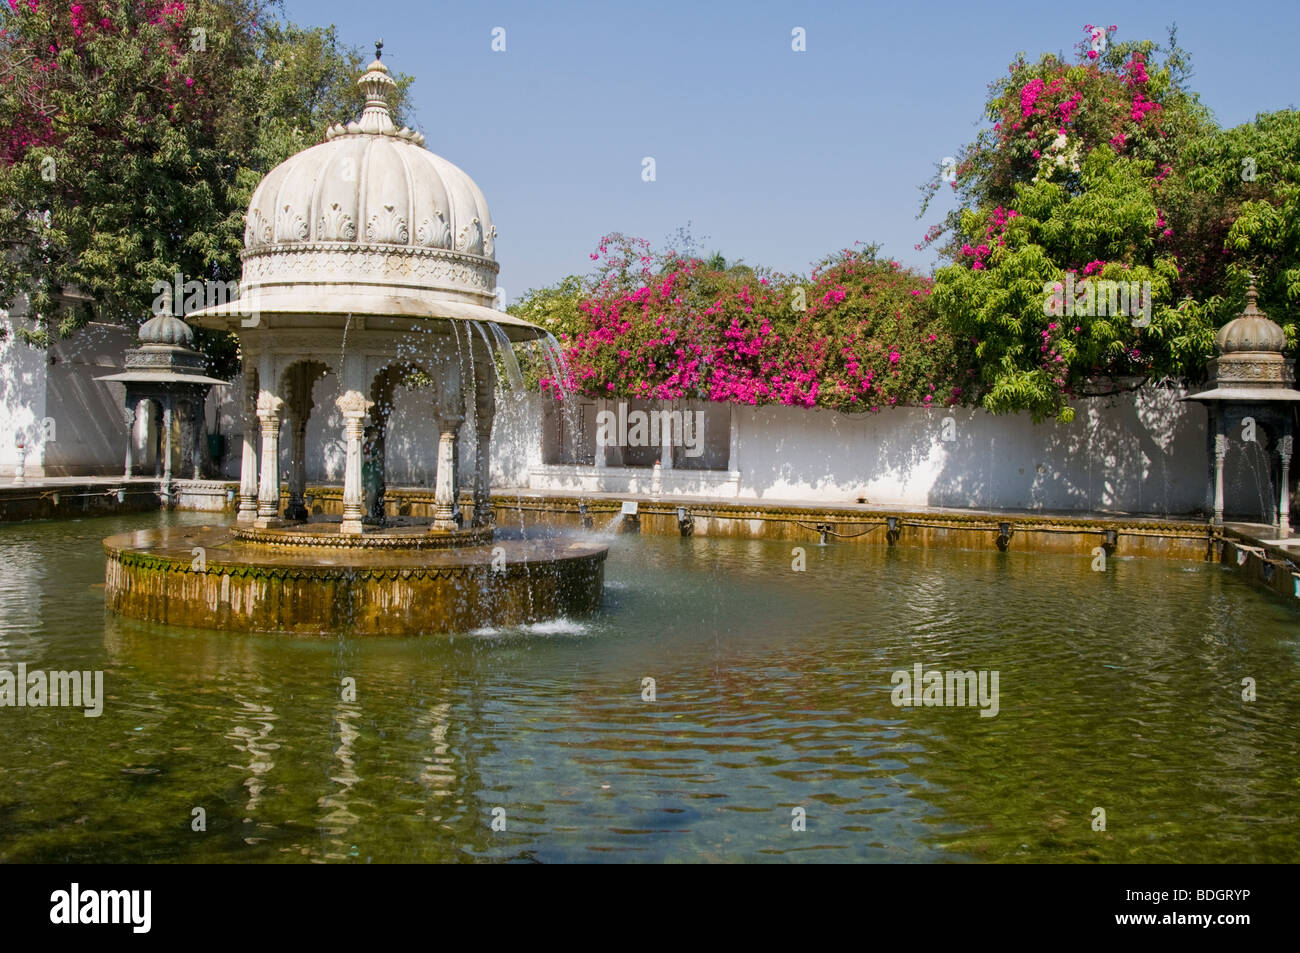 Gärten der Maids Of Honour, schwarzen Marmor Kioske, schmücken die eckiger Pool am Eingang, Sahelion k Bari, Udaipur, Rajasthan, Indien Stockfoto